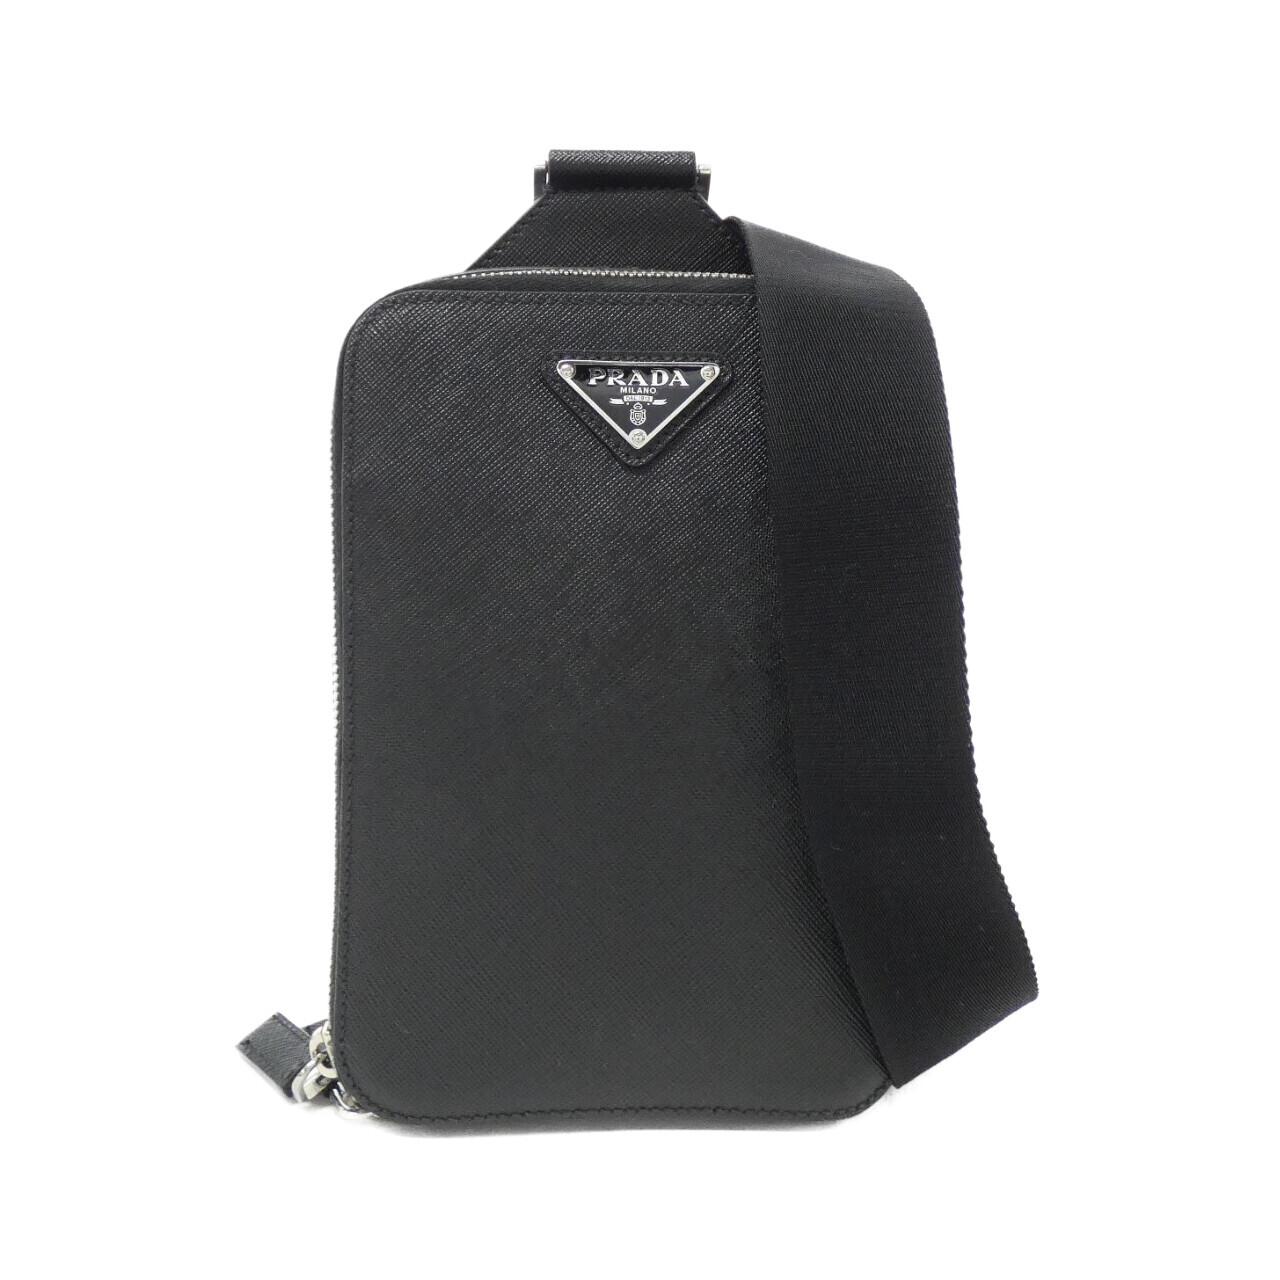 Prada 2VZ106 shoulder bag